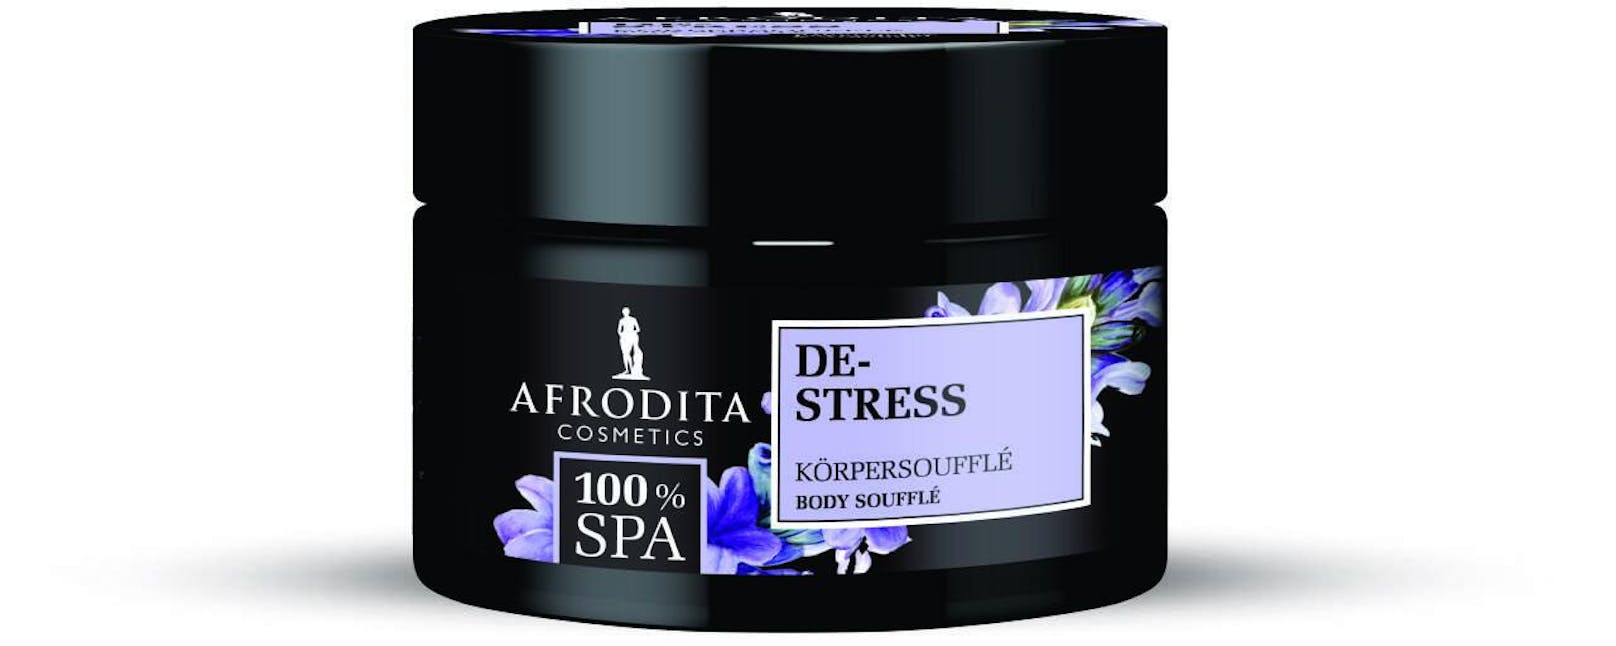 AFRODITA 100 % SPA De-Stress Körpersoufflé